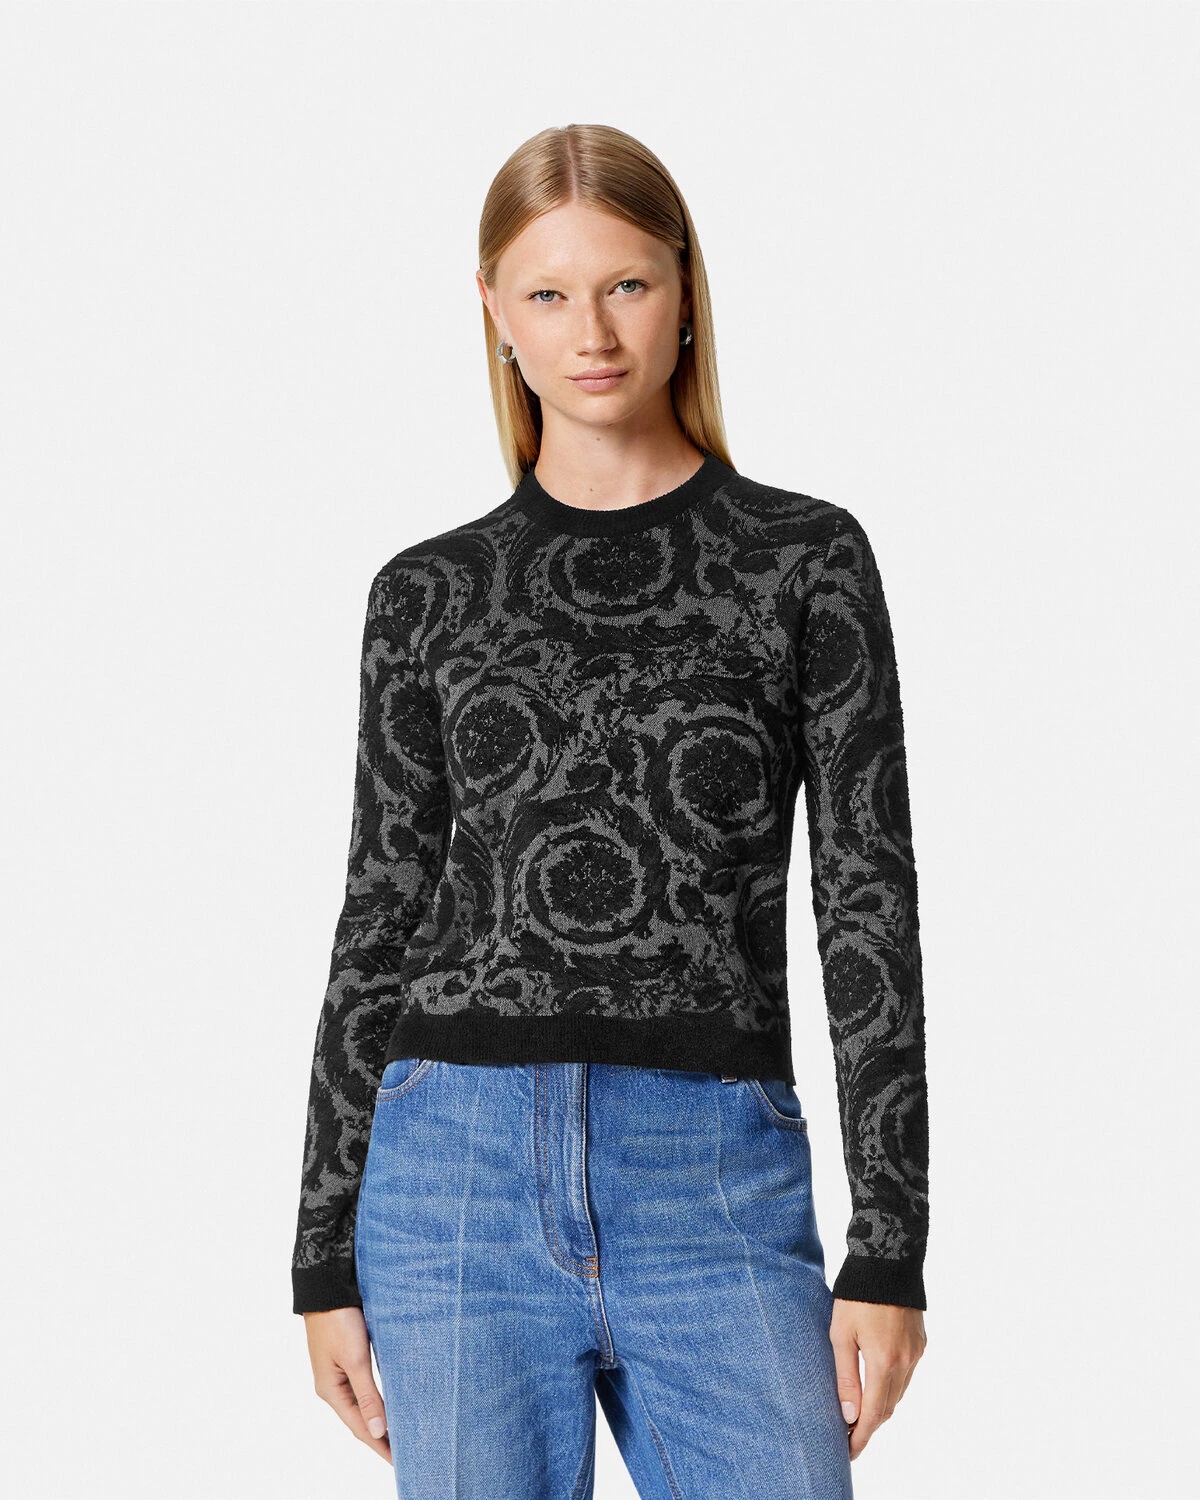 Barocco Chenille Sweater - 4